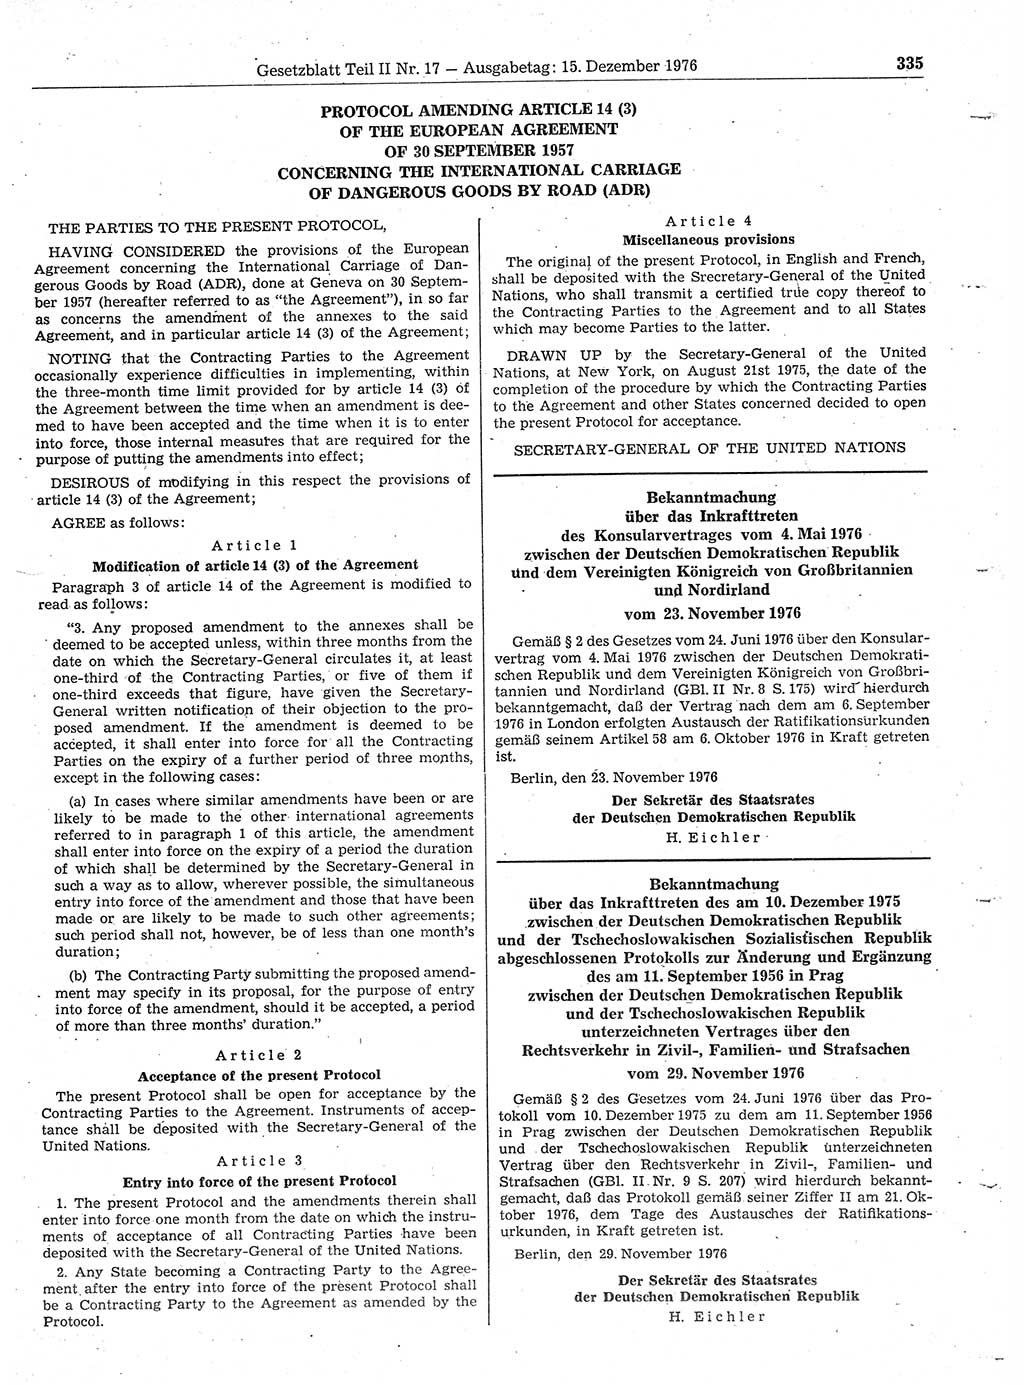 Gesetzblatt (GBl.) der Deutschen Demokratischen Republik (DDR) Teil ⅠⅠ 1976, Seite 335 (GBl. DDR ⅠⅠ 1976, S. 335)